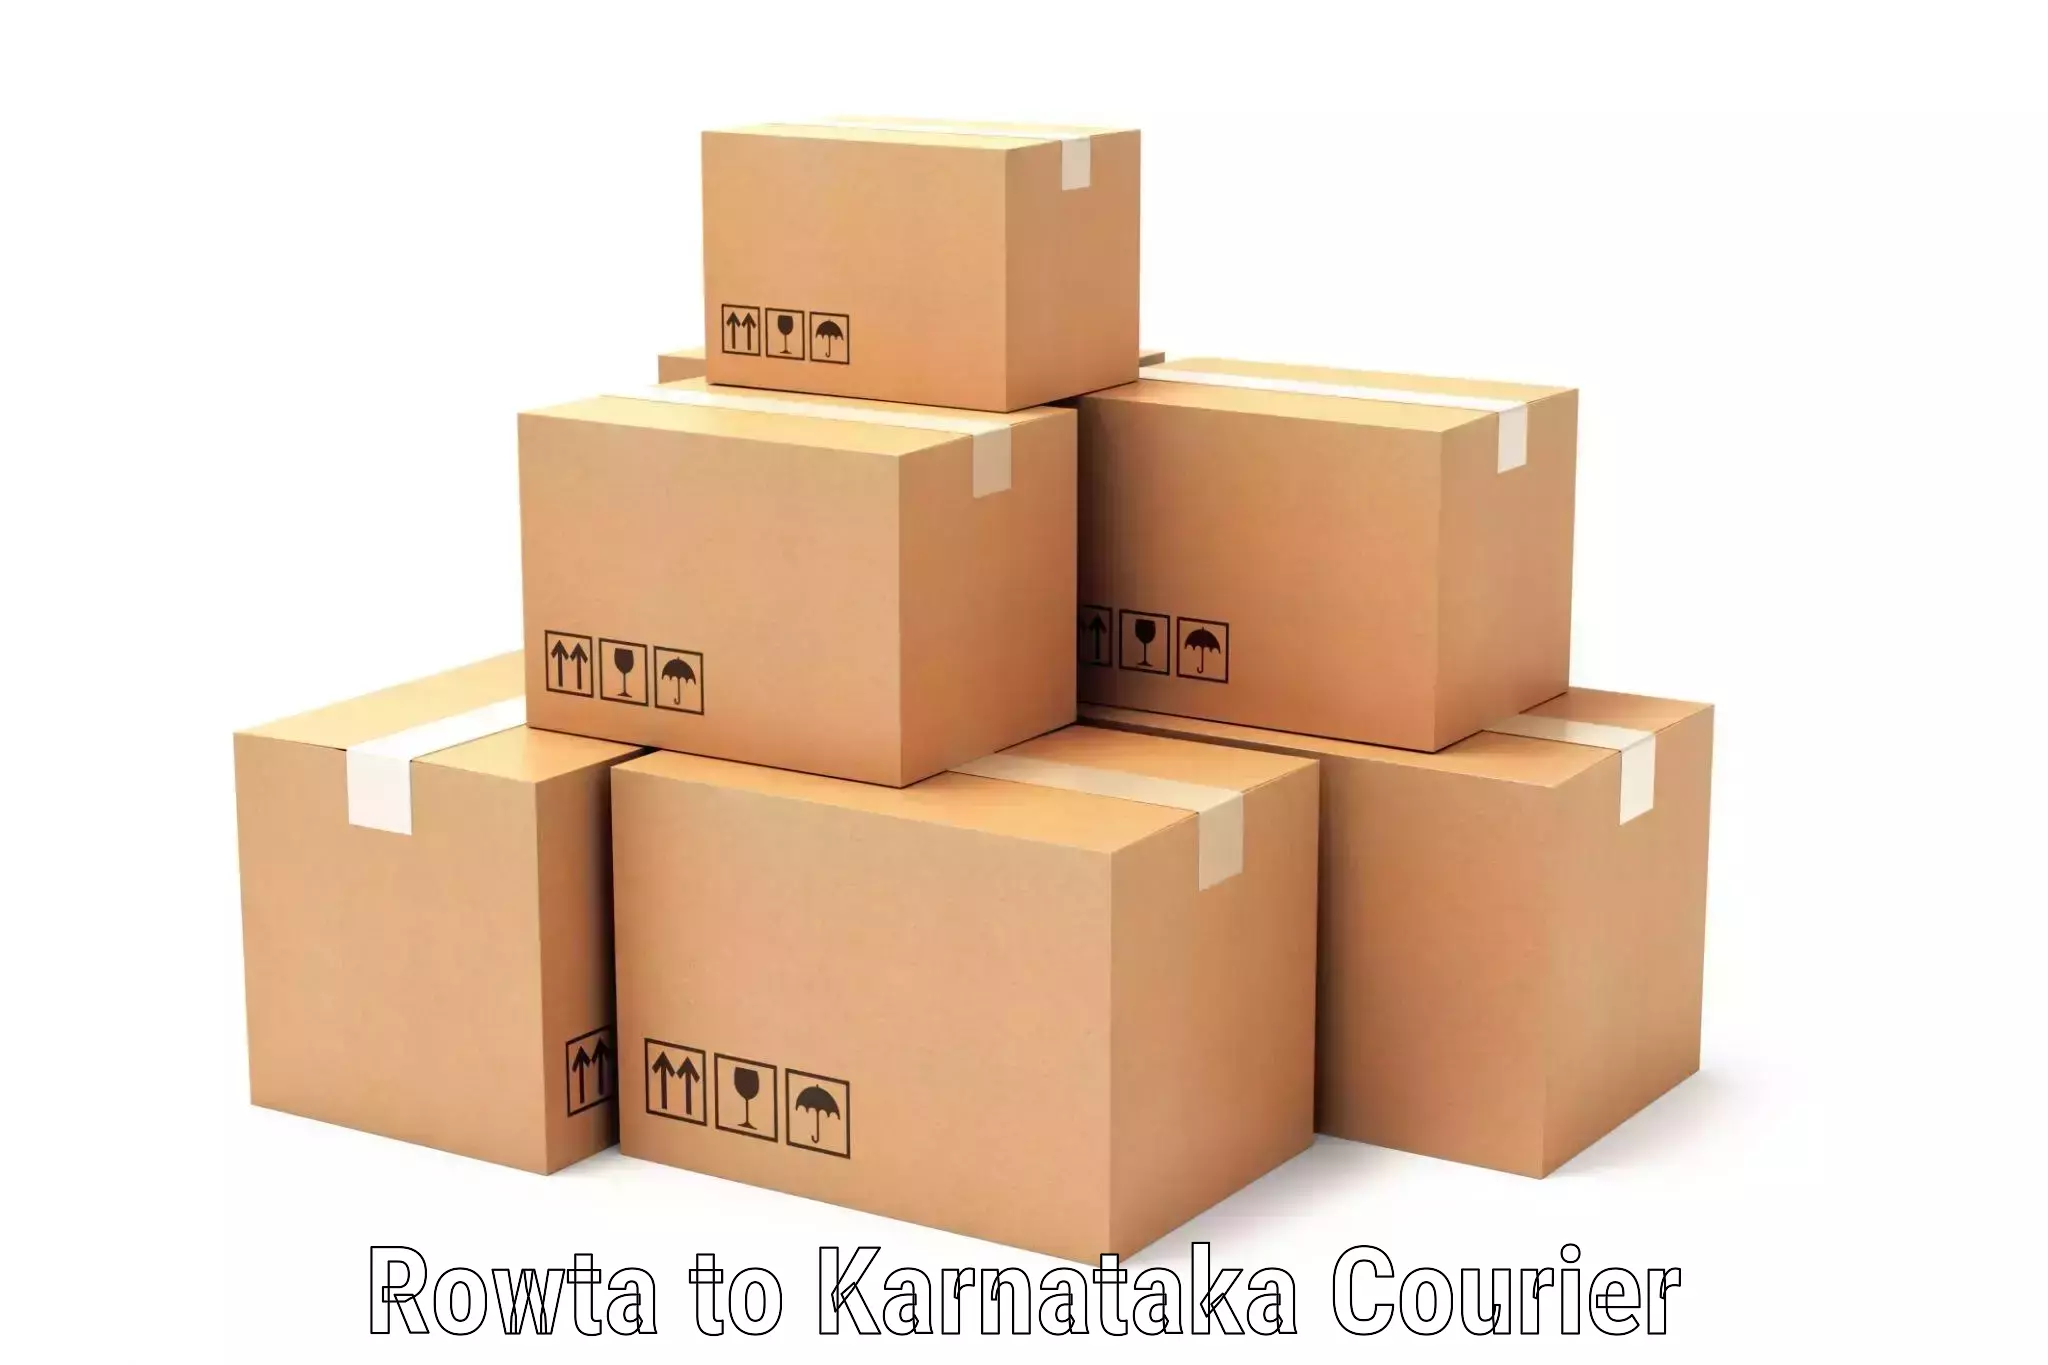 Efficient cargo services Rowta to Kanakapura